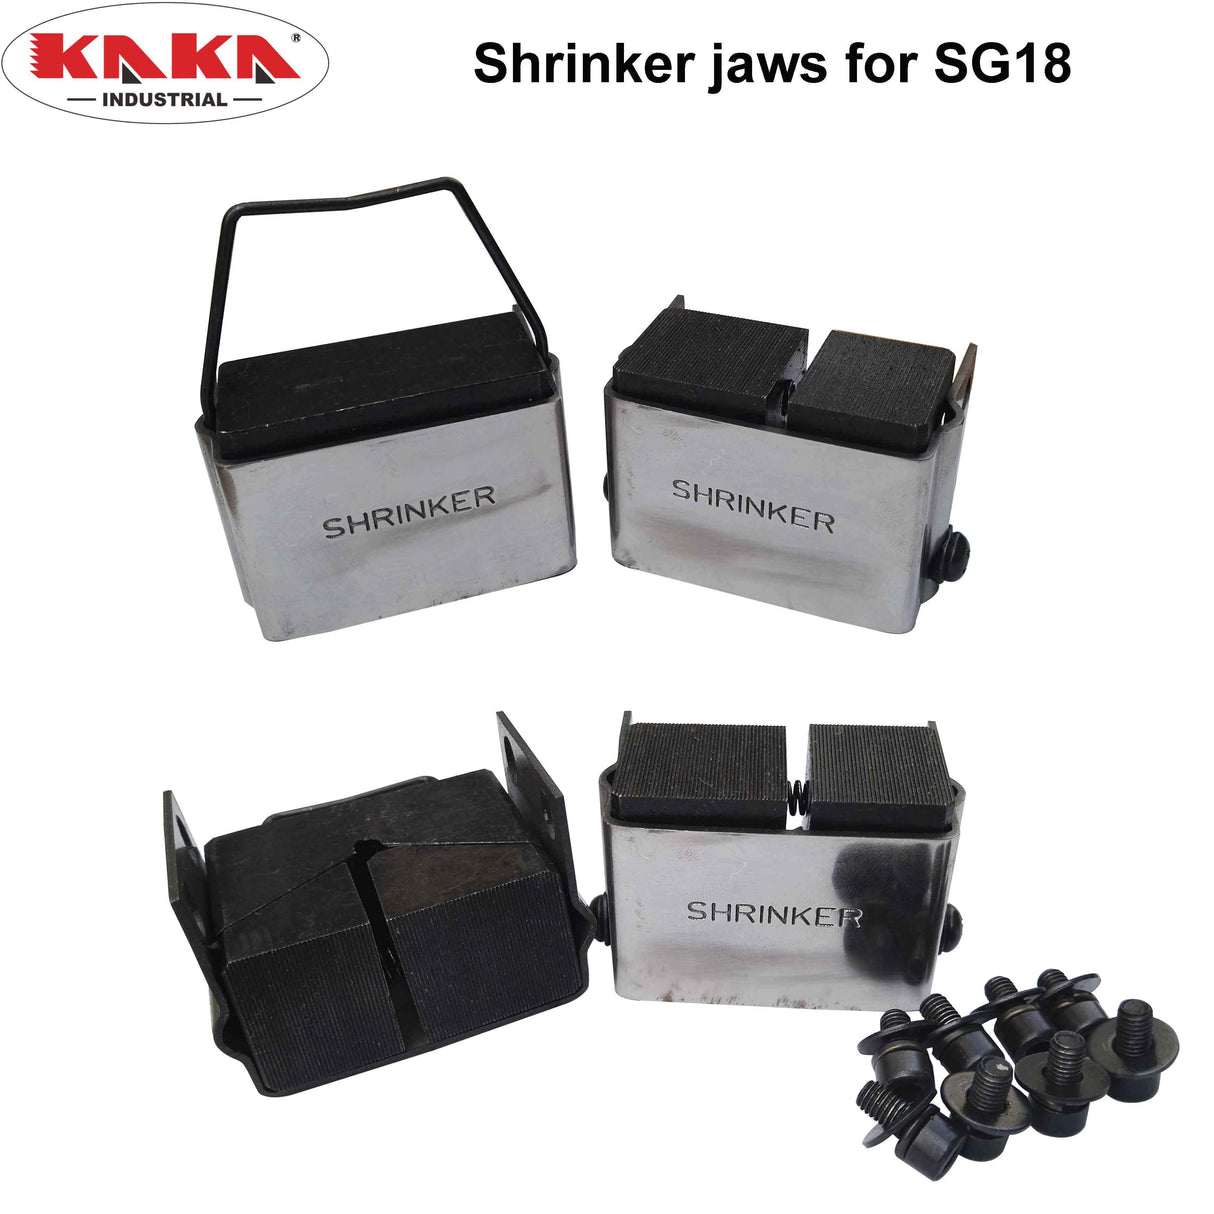 Juego de Dados Shrinker & stretcher jaws para SG18